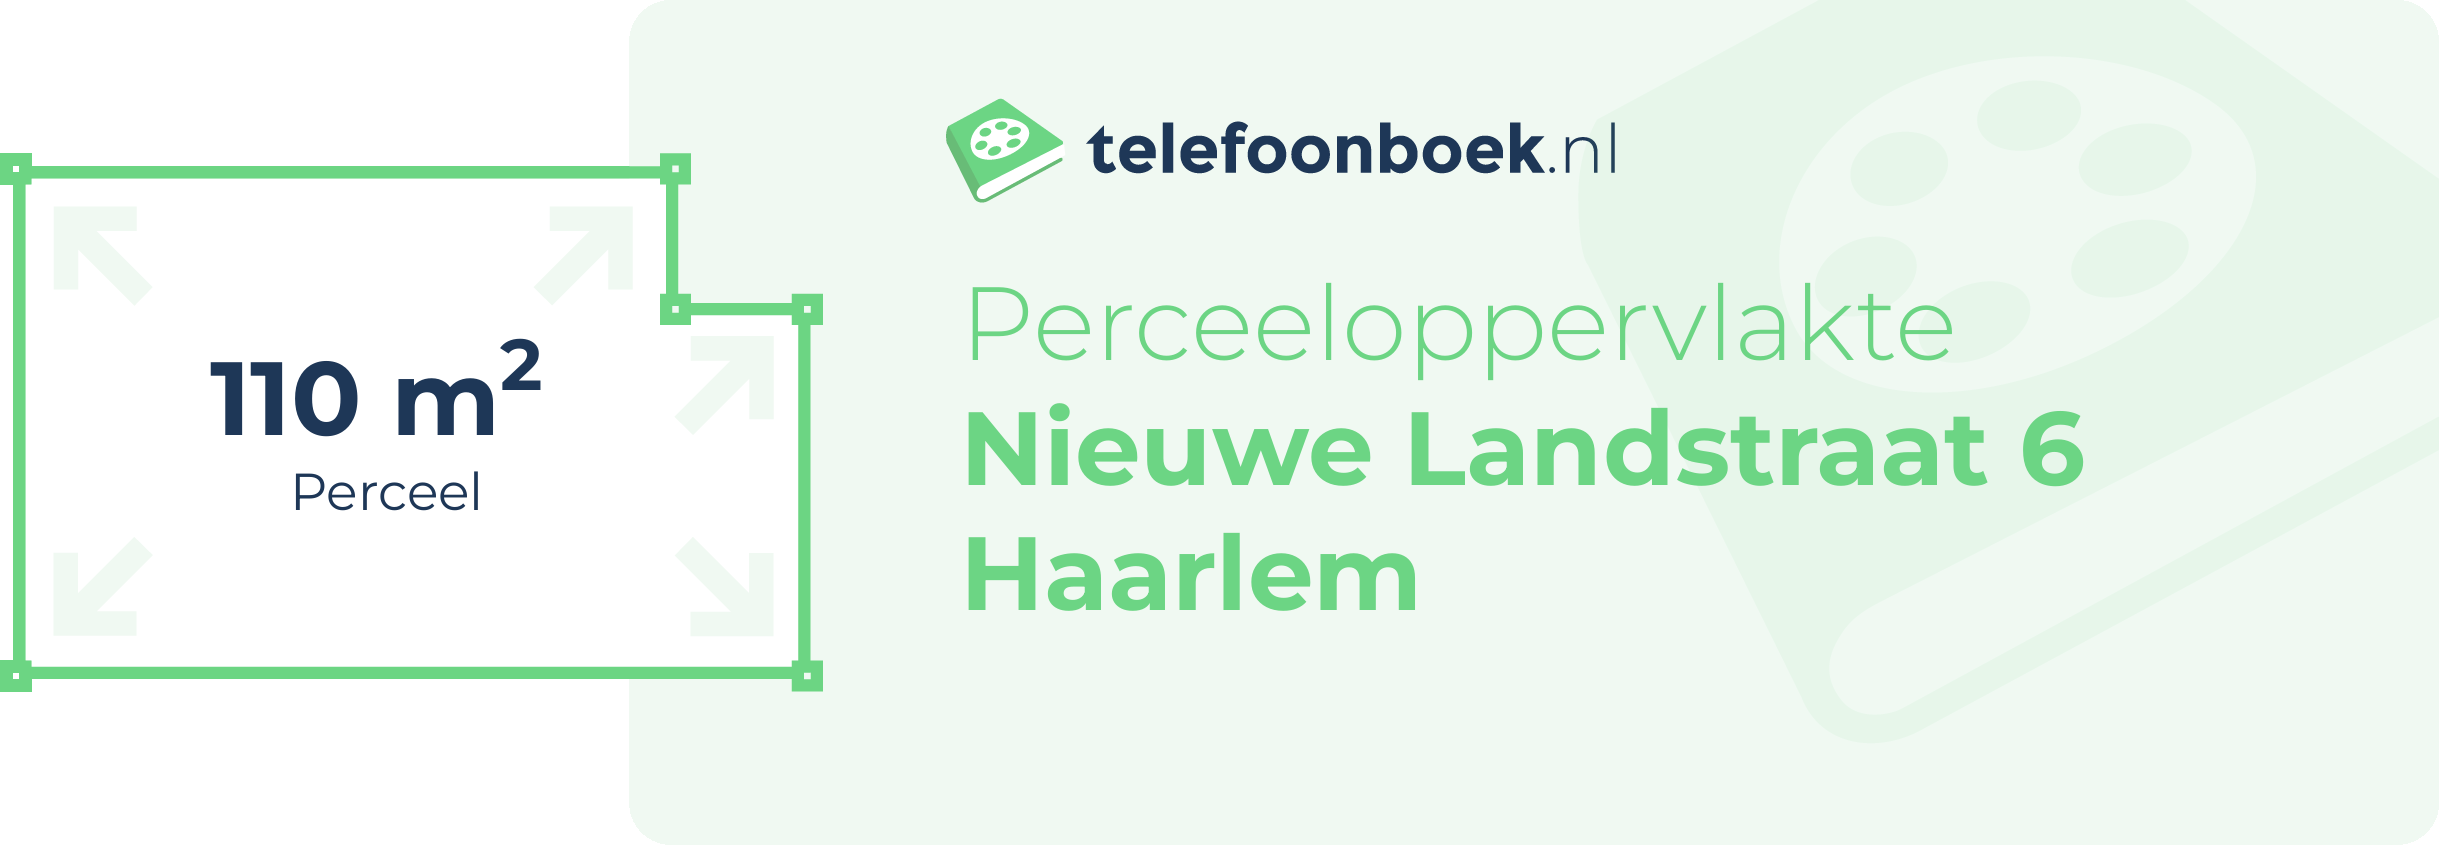 Perceeloppervlakte Nieuwe Landstraat 6 Haarlem